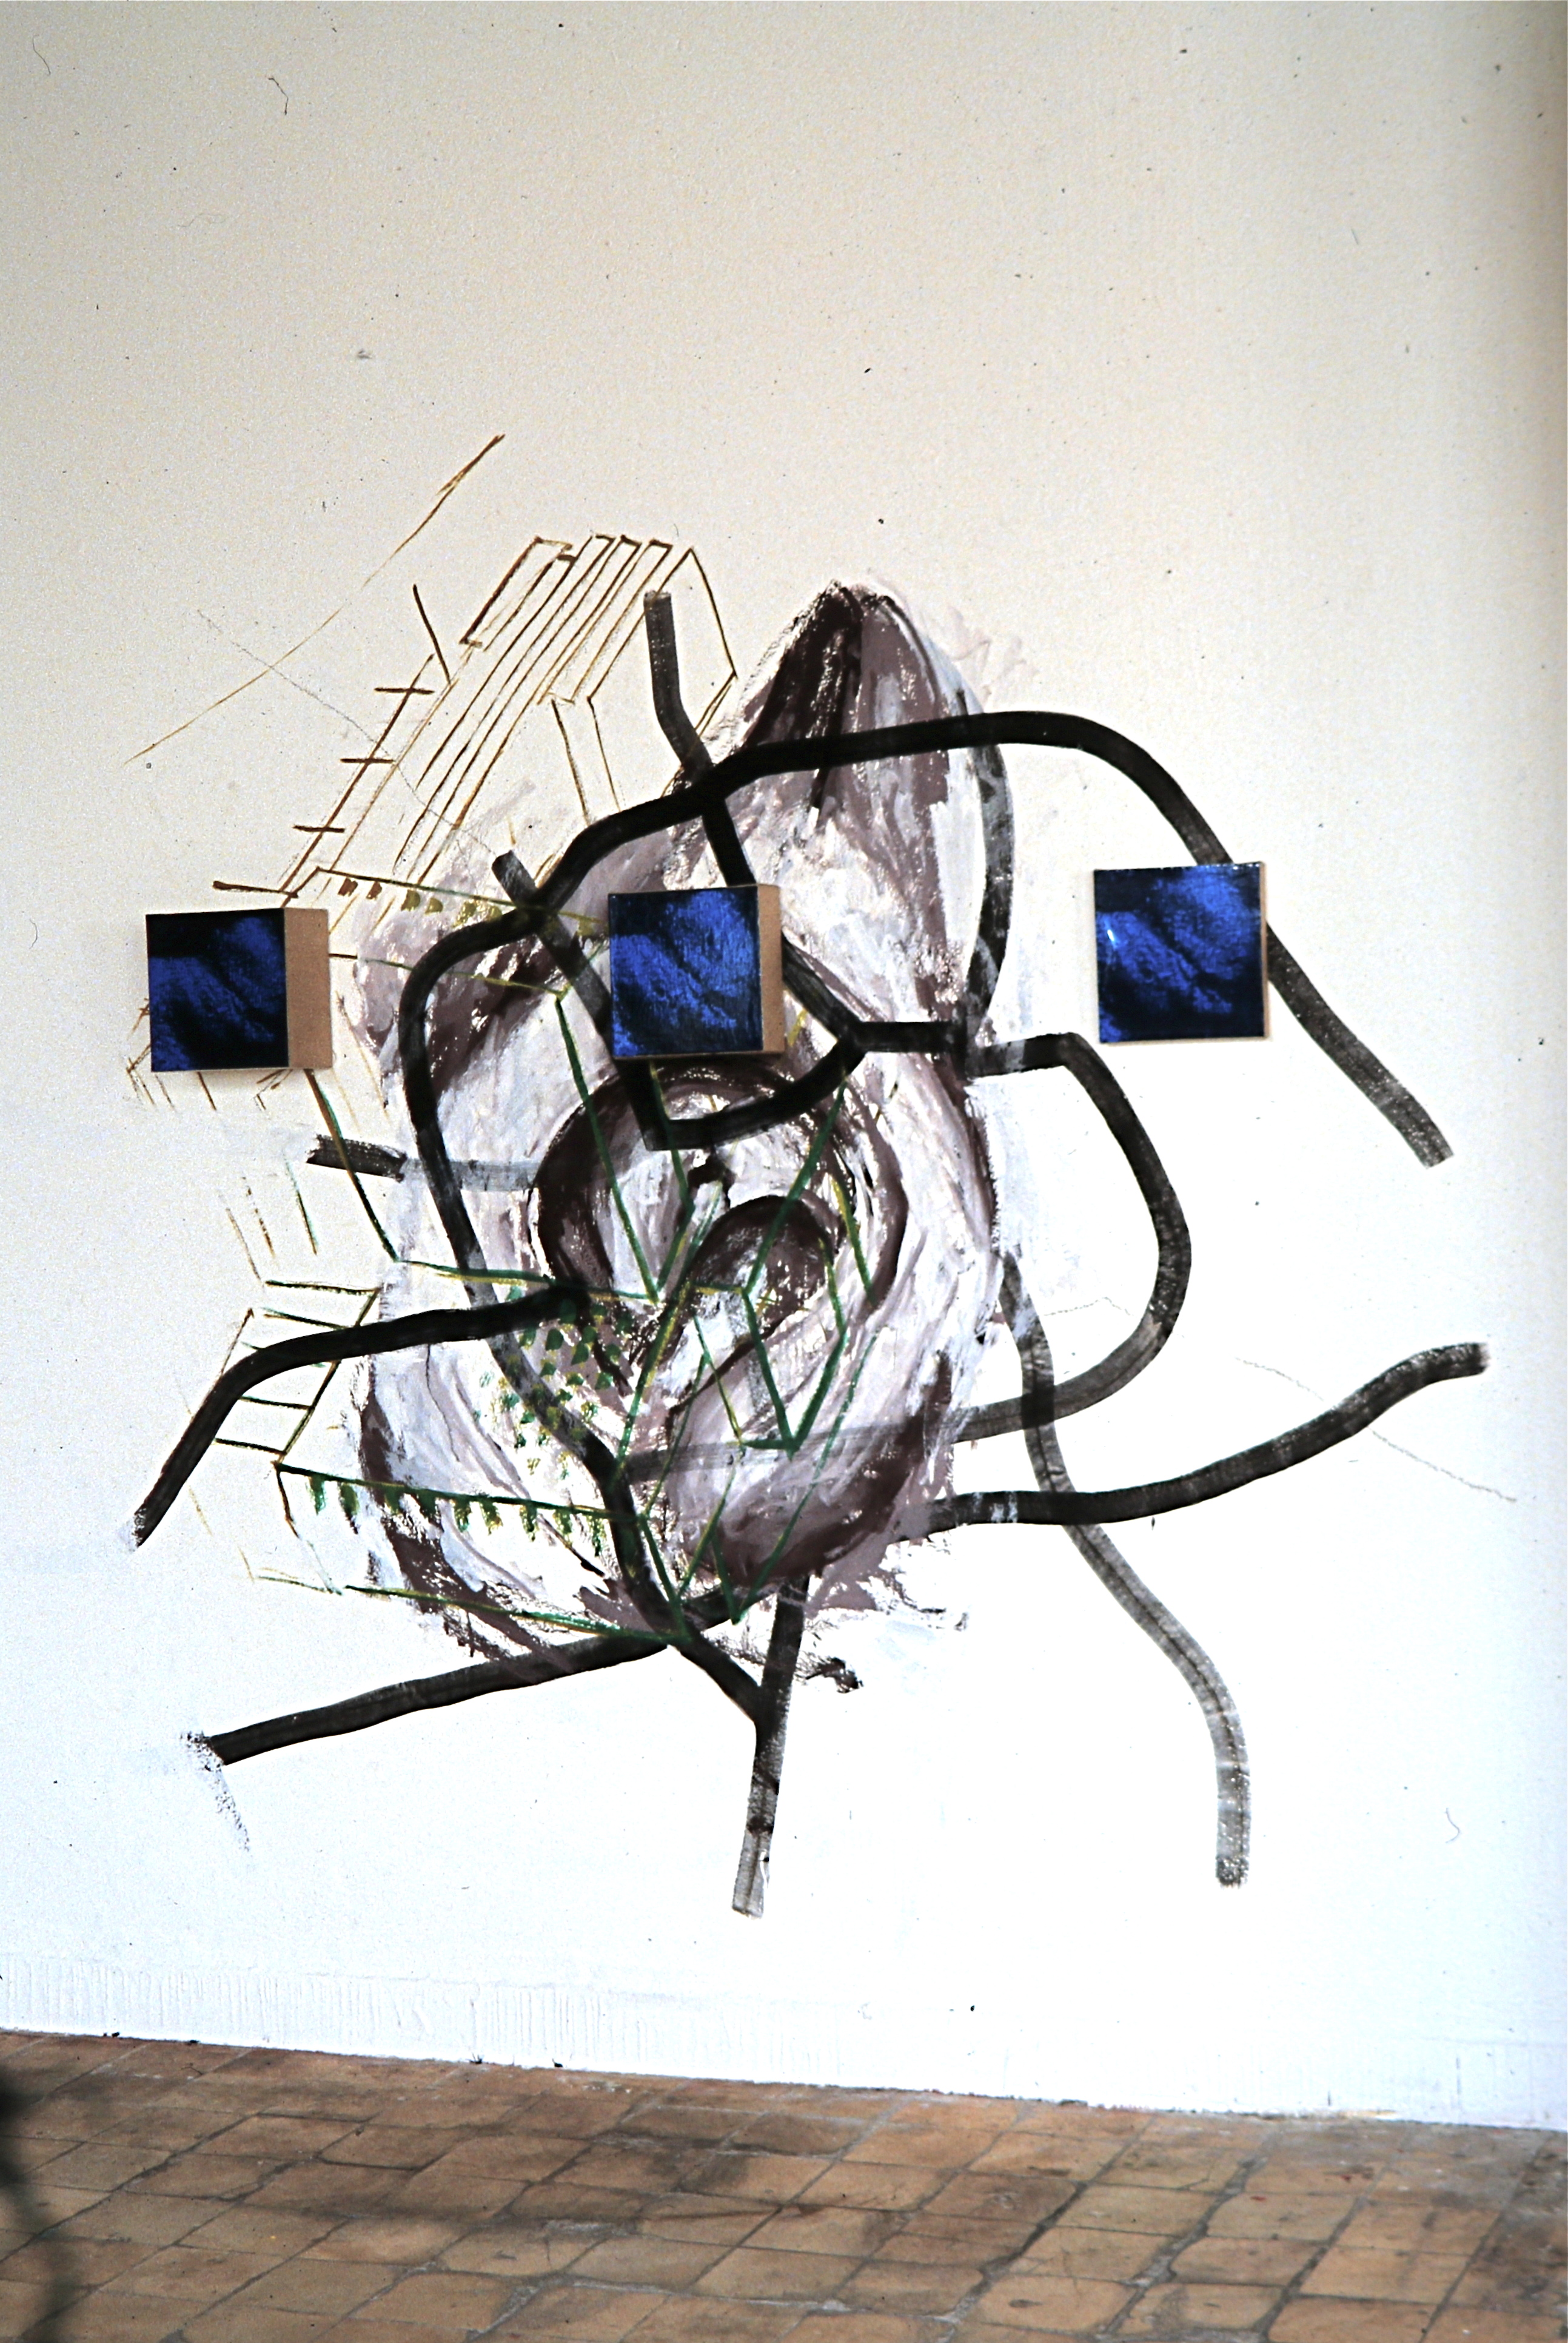 Wandarbeit 3, Wandmalerei, Fotokopie auf Leinwand, 1991, Erwin Holl